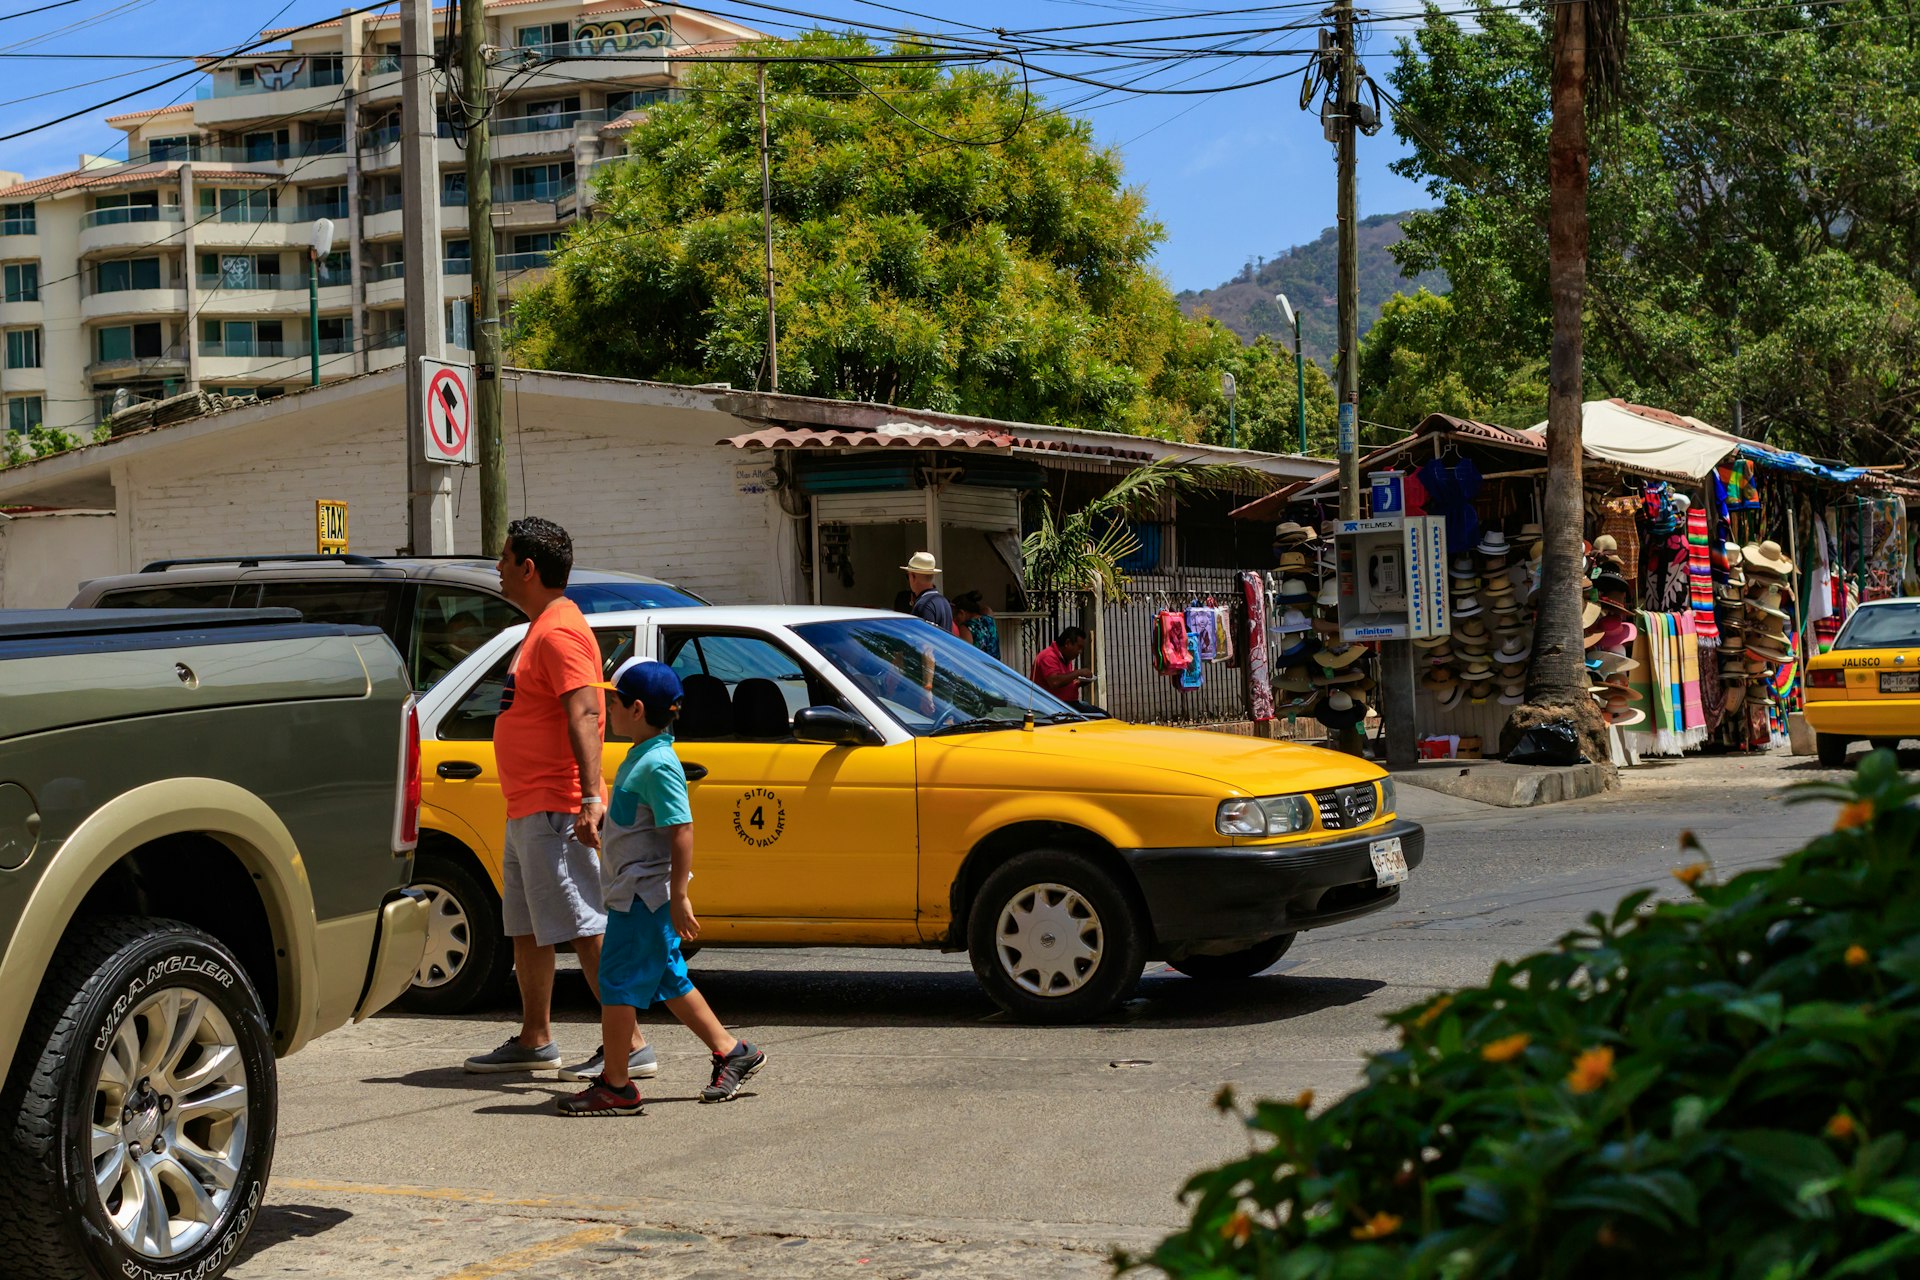 A taxi in Puero Vallarta, Mexico